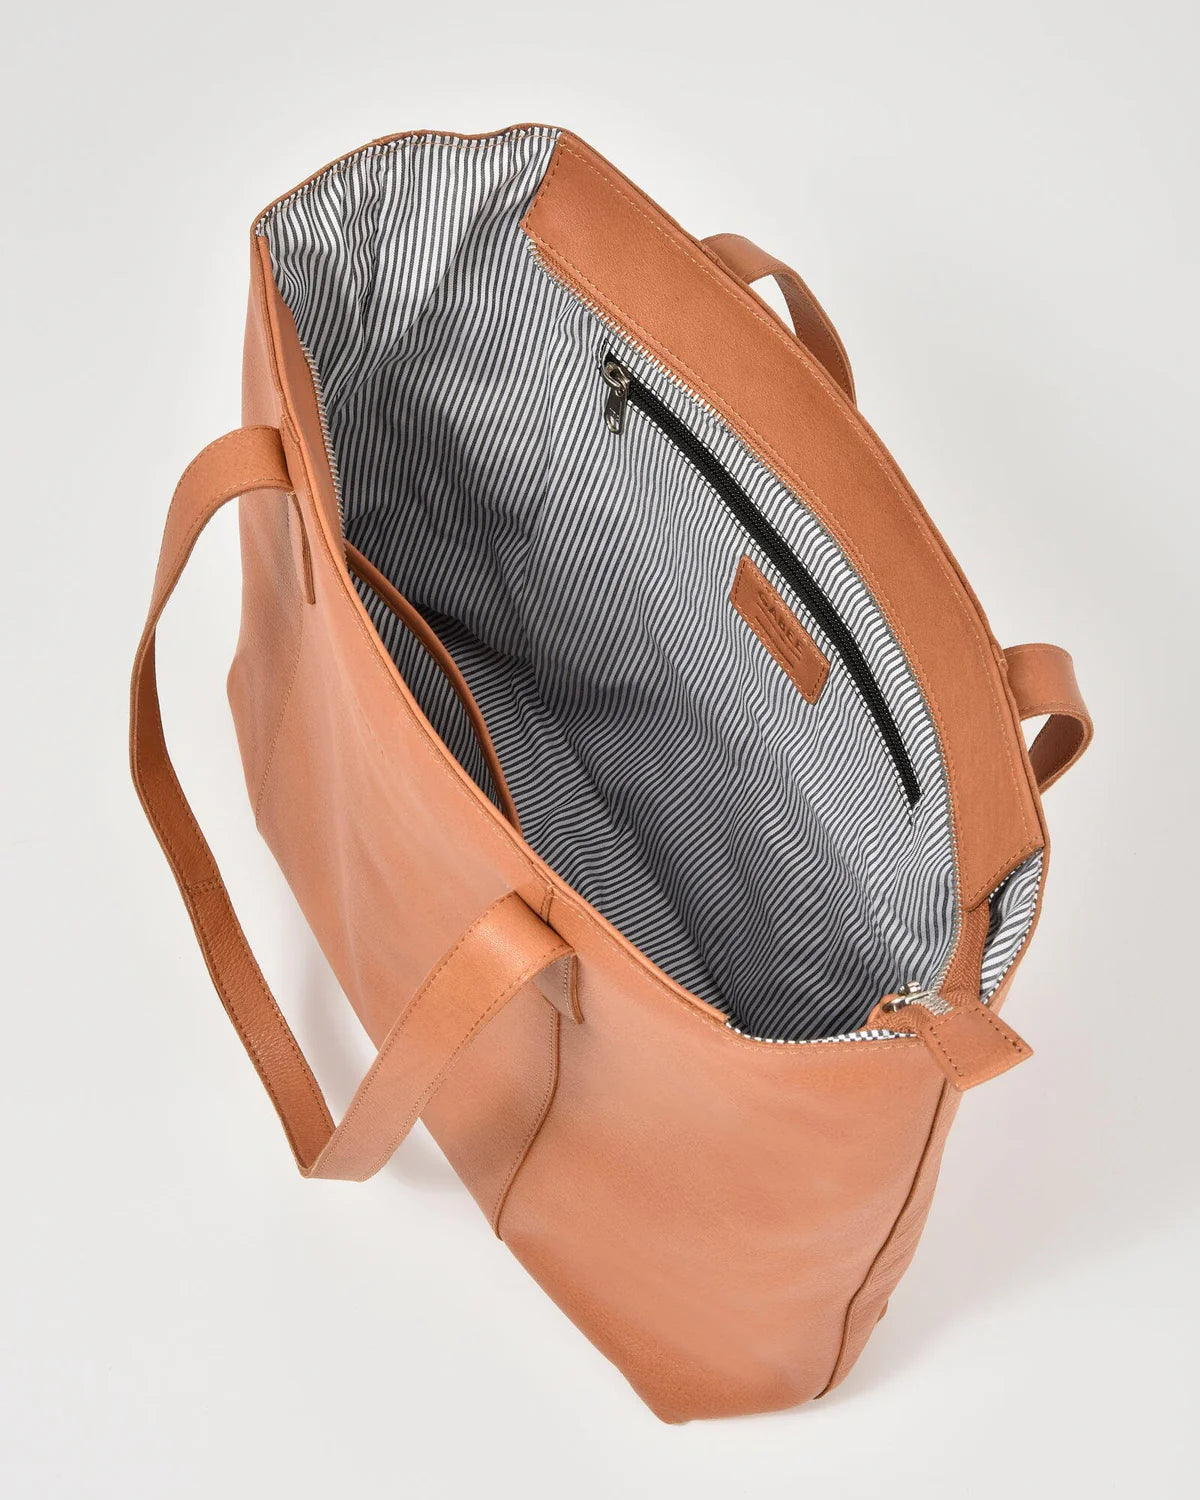 Gabee - Genine Leather Tote Bag